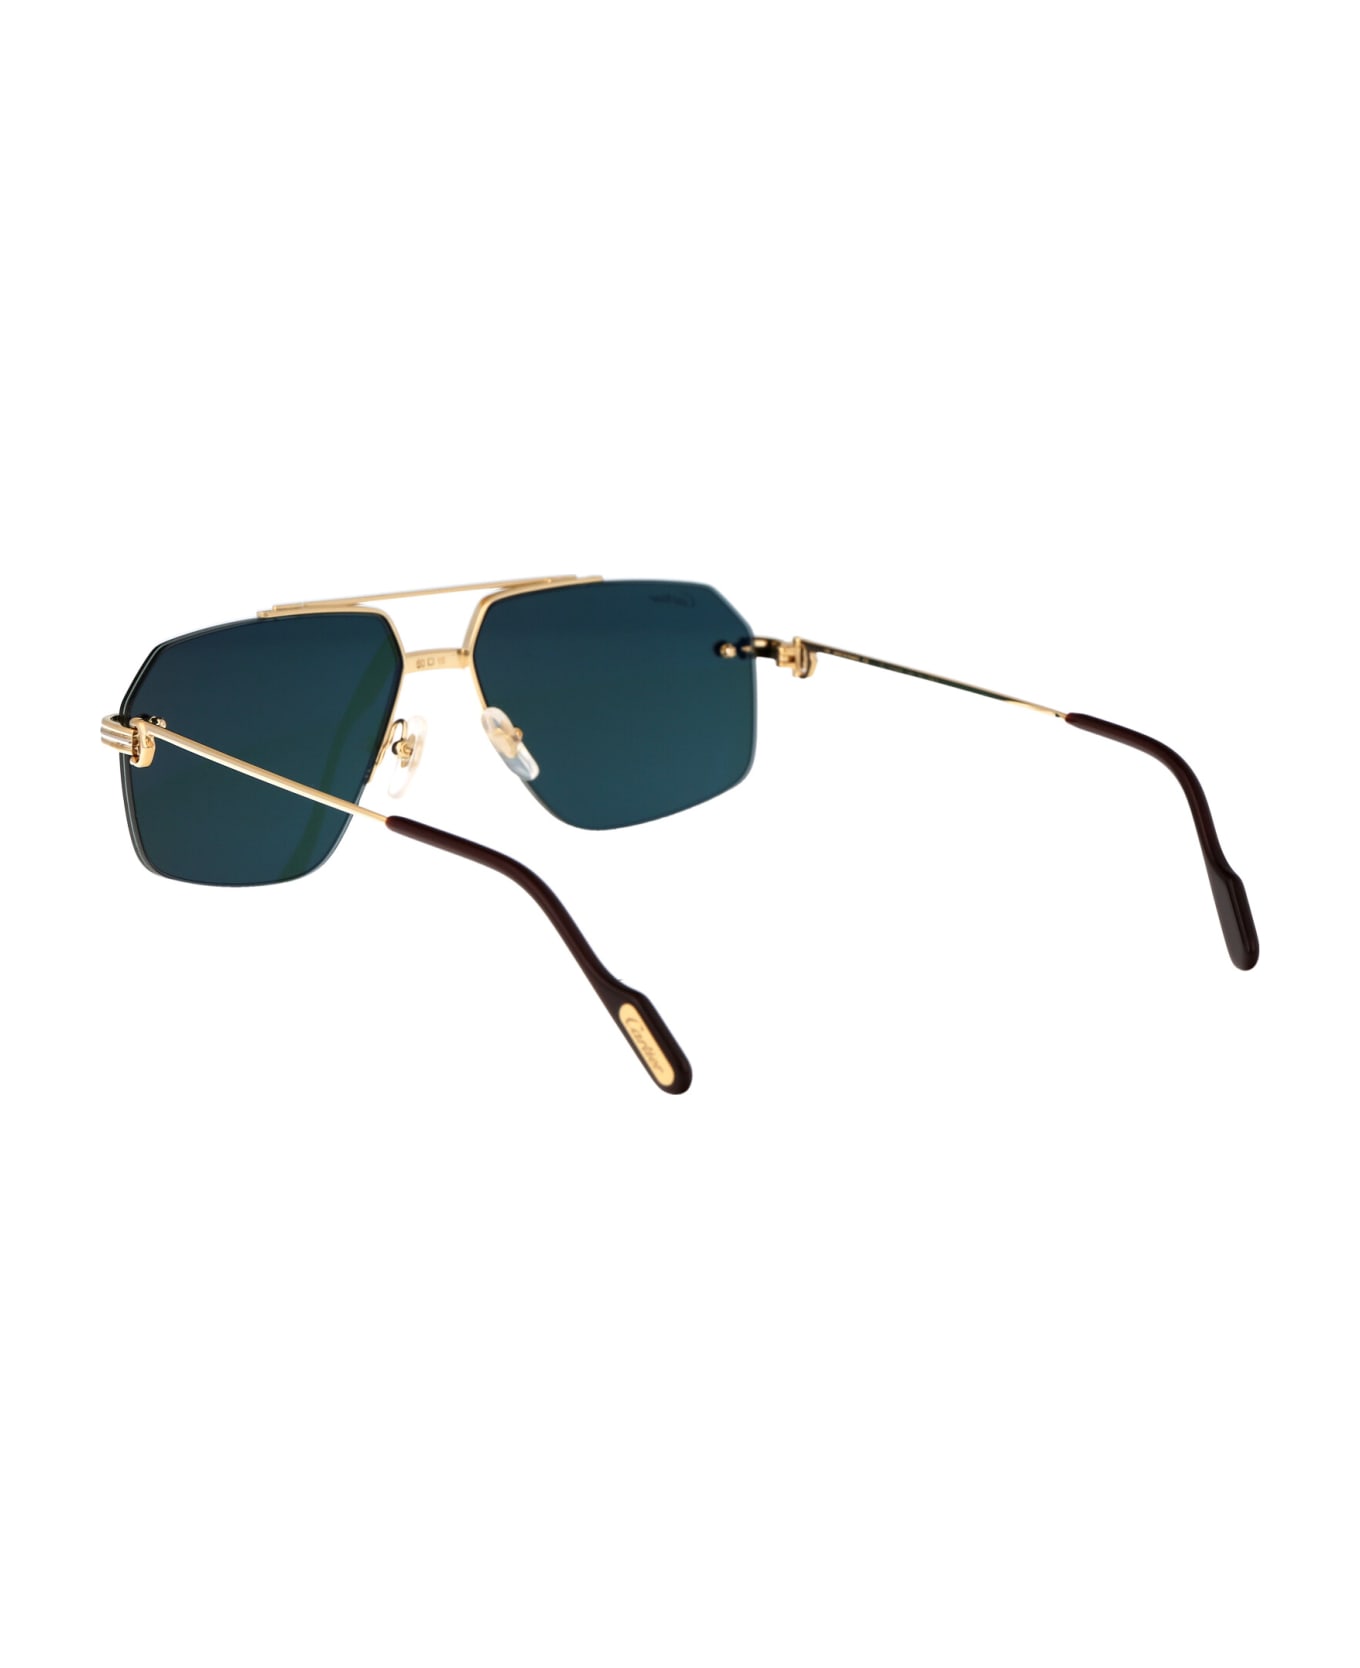 Cartier Eyewear Ct0426s Sunglasses - 002 GOLD GOLD GREEN